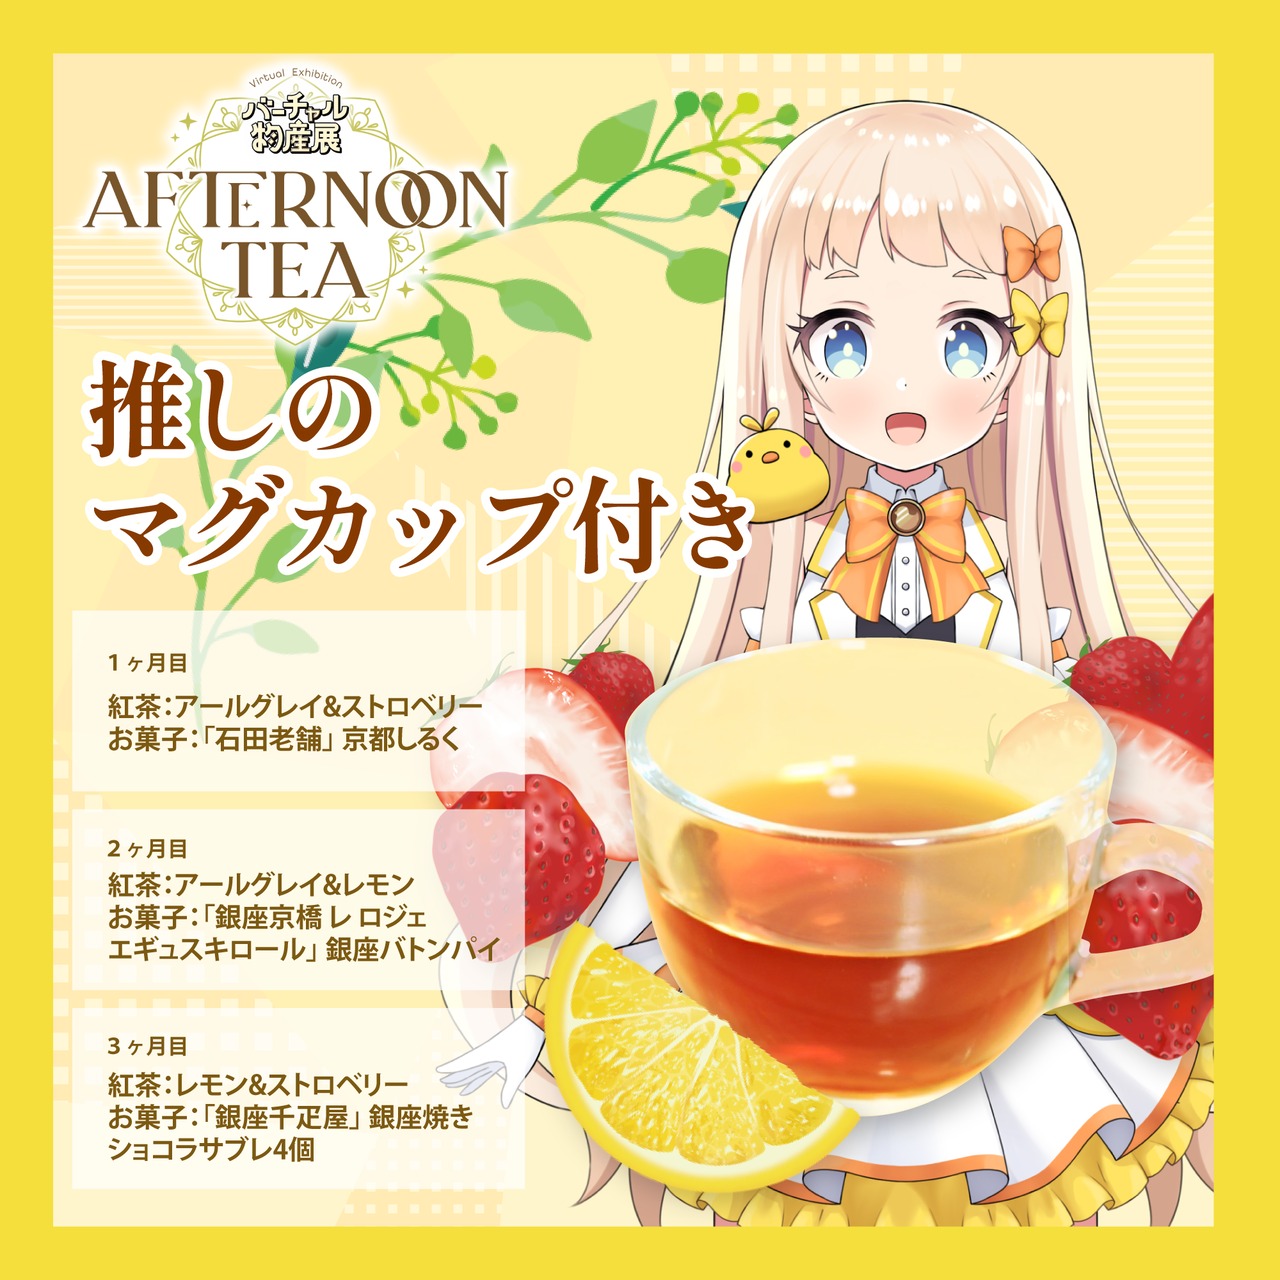 【朝宮いく】バーチャル物産展 〜AFTERNOON TEA〜